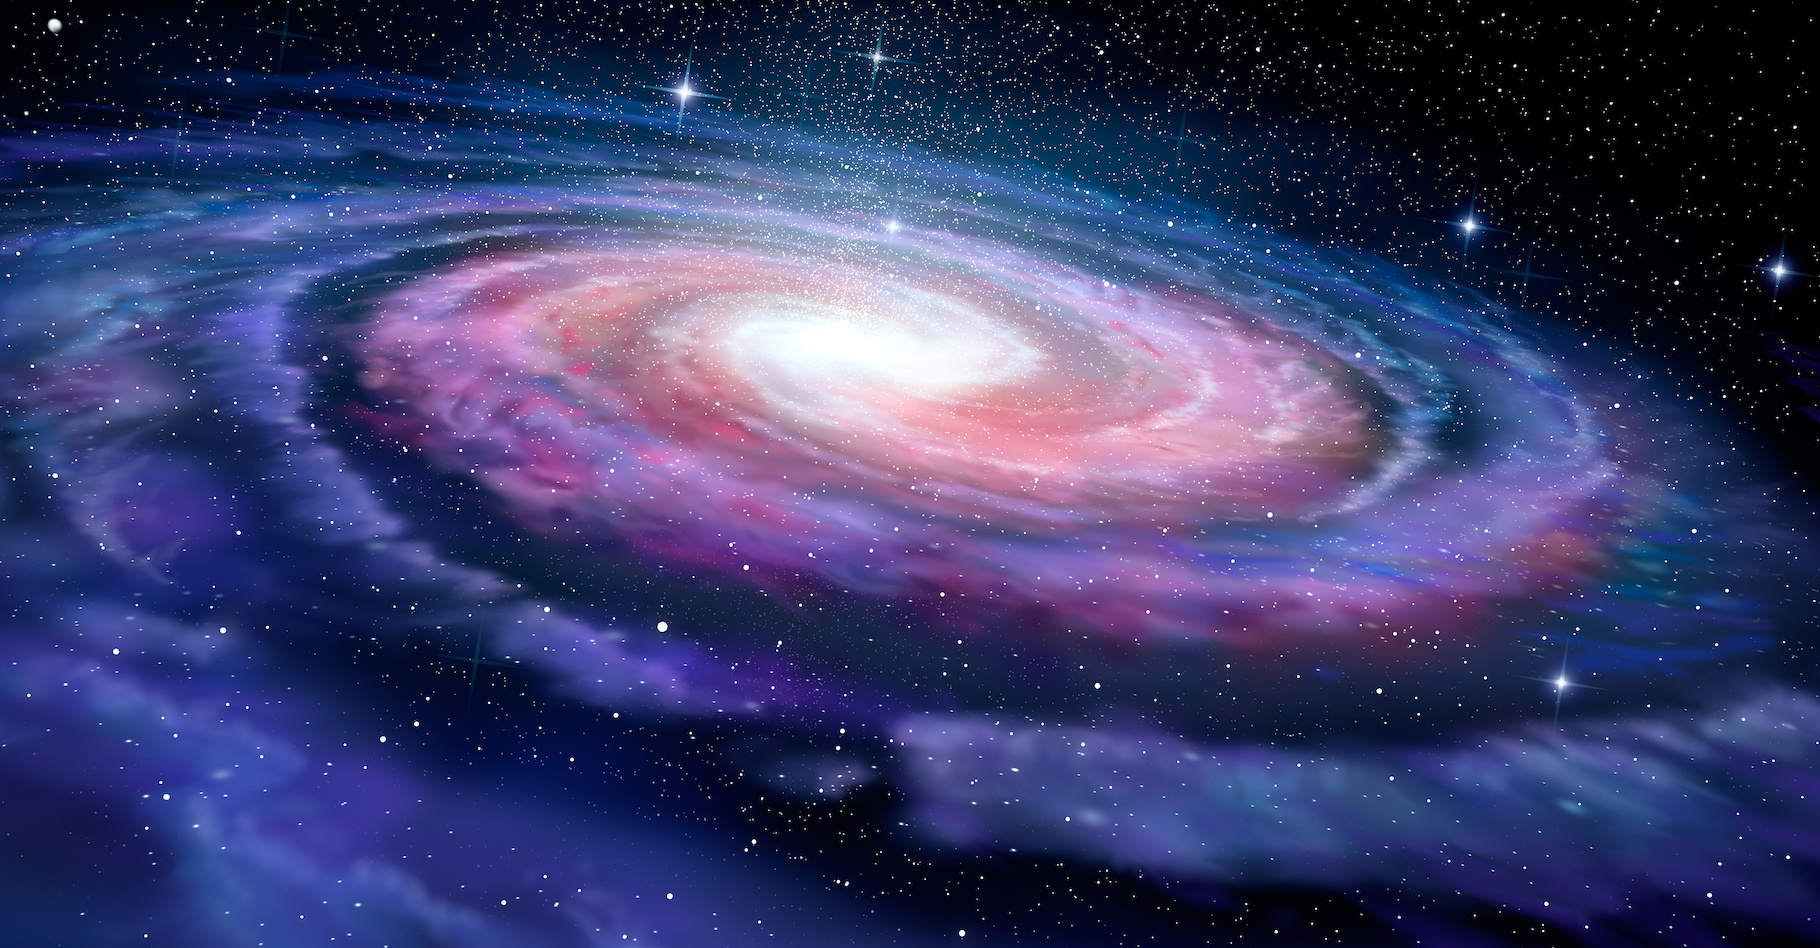 Des chercheurs de l’université de Durham (Royaume-Uni) et de l’université d’Helsinki (Finlande) expliquent comment les galaxies spirales du plan supergalactique se sont transformées en galaxies elliptiques. © Alex Mit, Adobe Stock